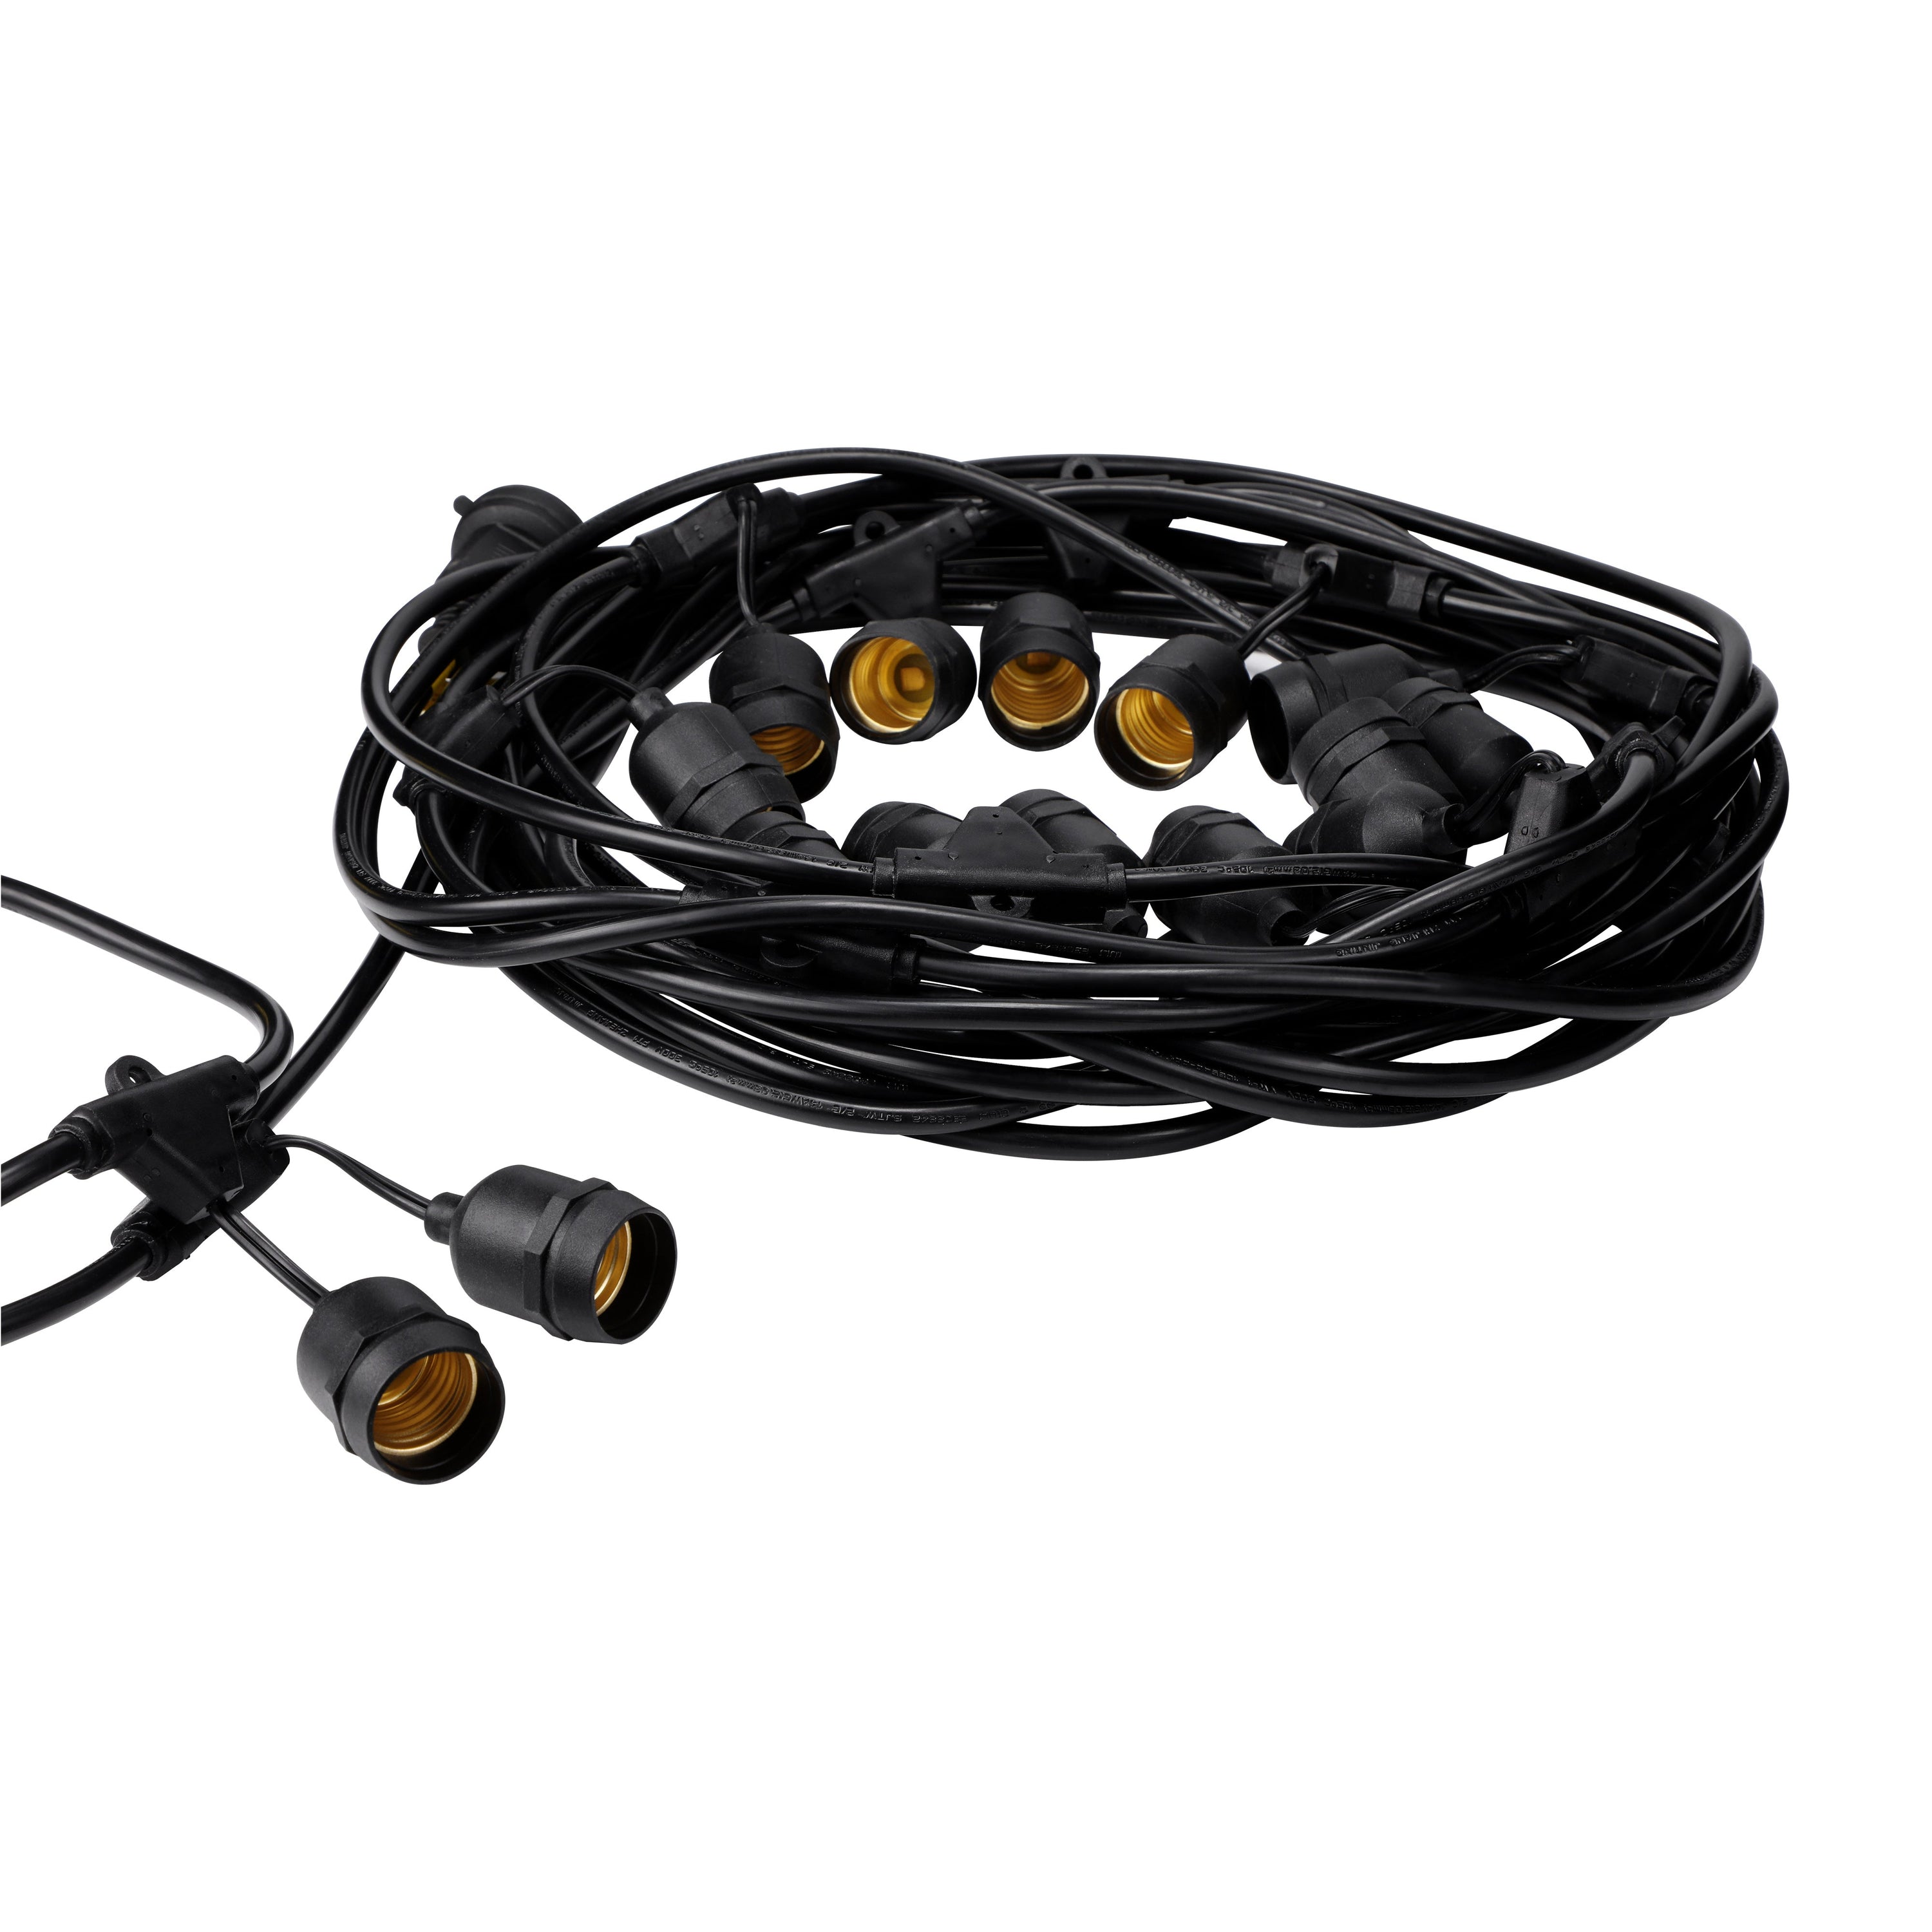 TORCHSTAR® Pro Retro Outdoor String Light - 50 Feet 15 Sockets